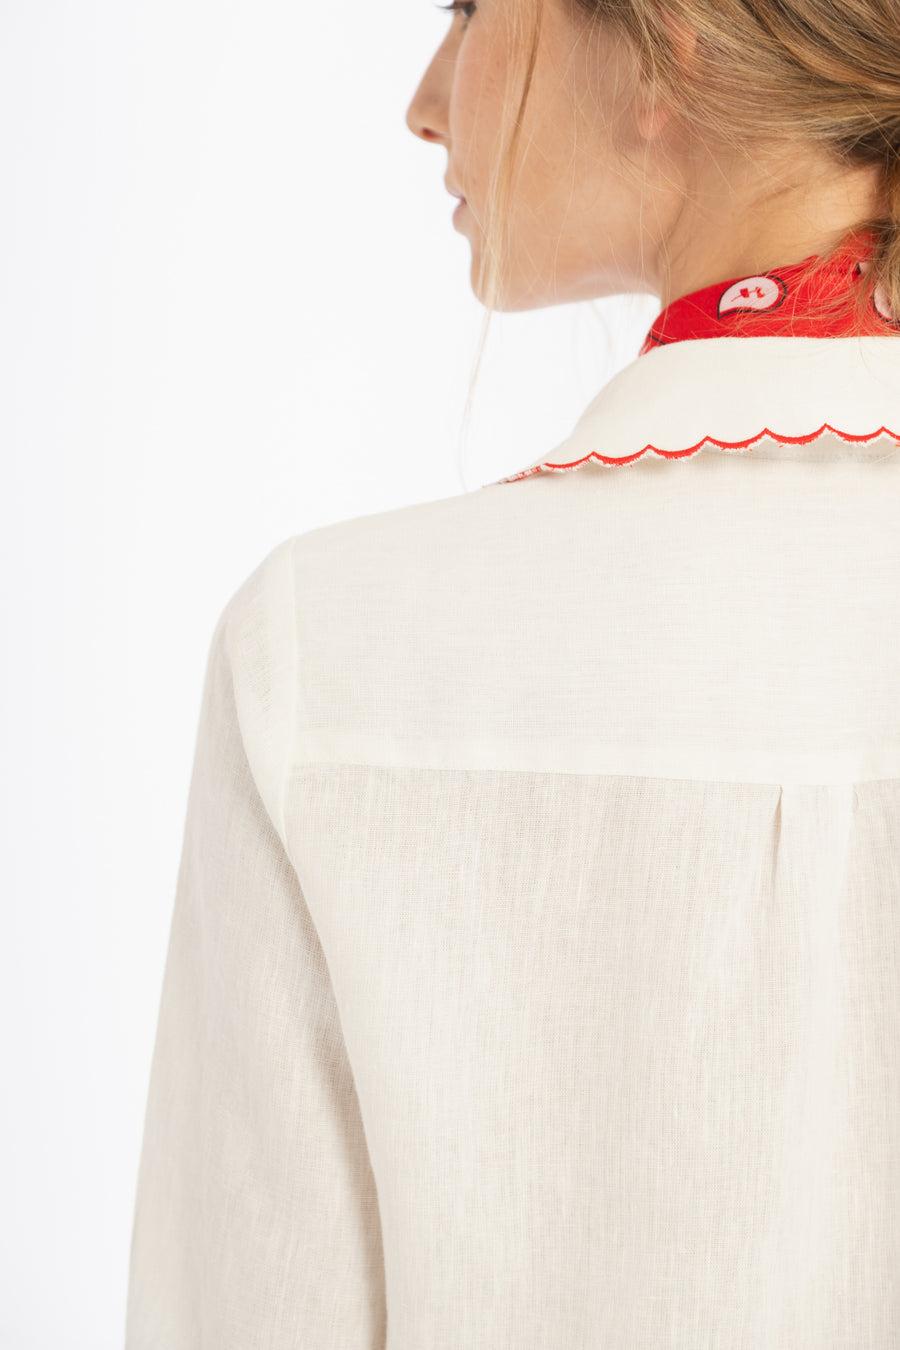 PRE VENTA |  Camisa Don’t Worry en Lino - Blanco con bordados rojos blanco m